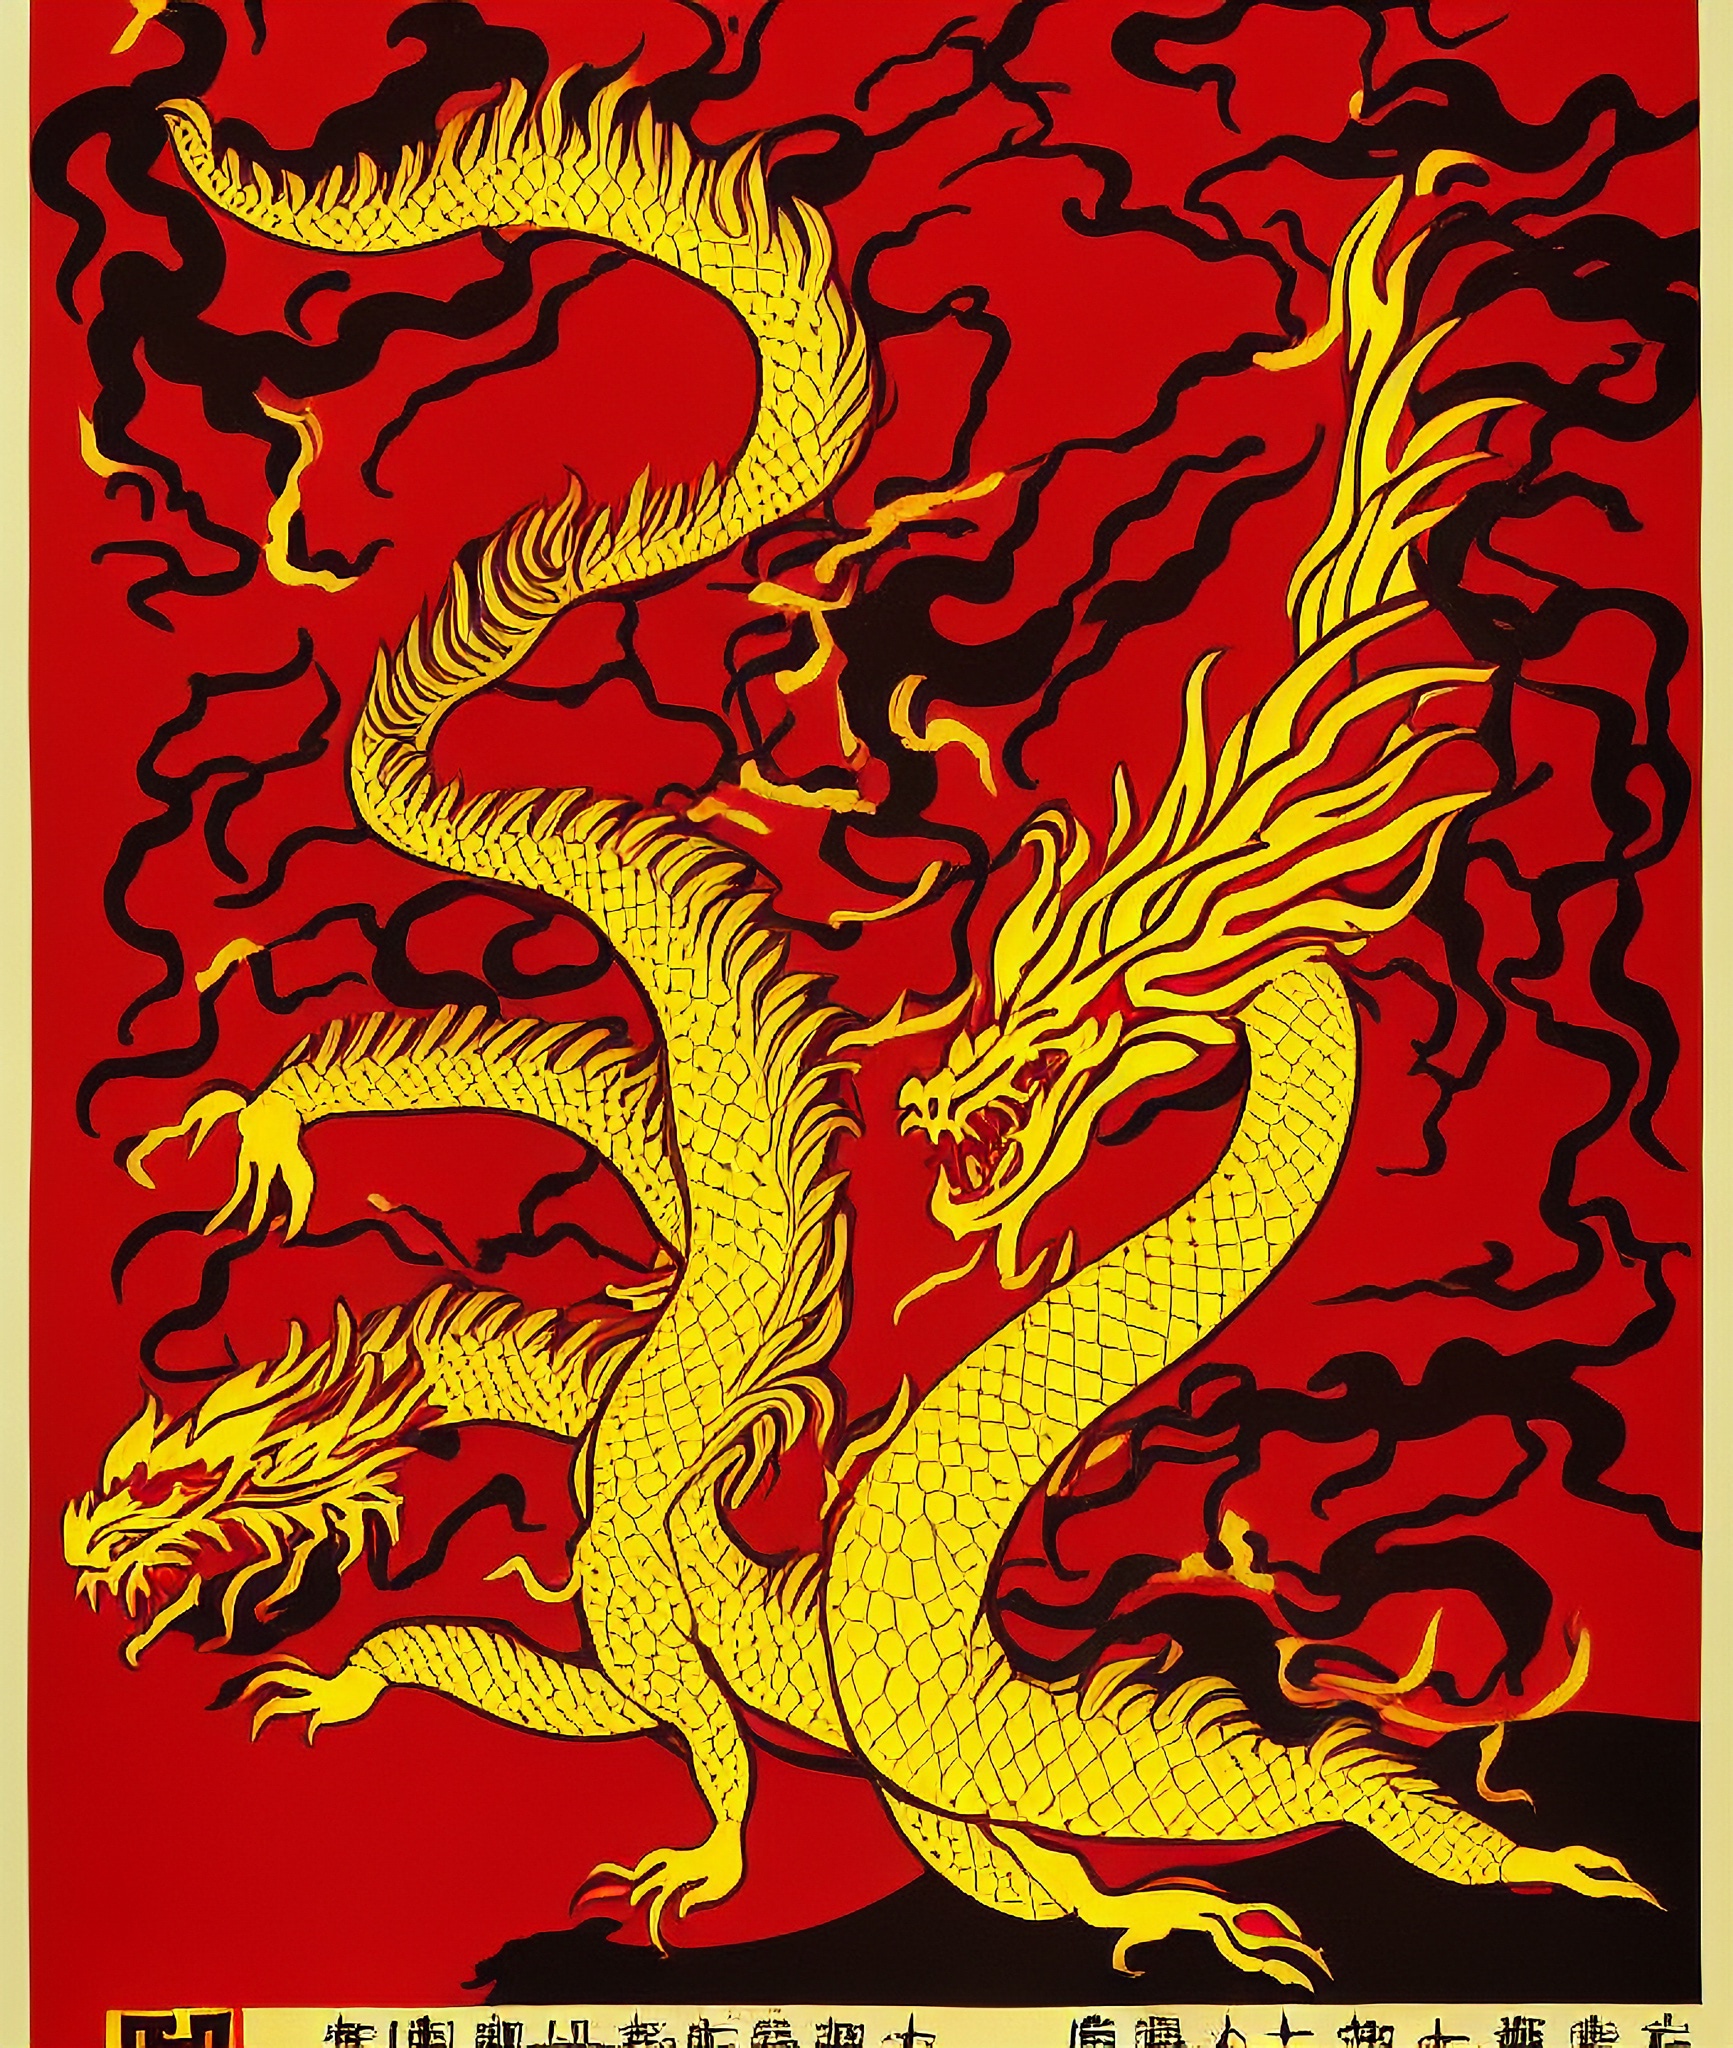 vintage-movie-poster-flames-girl-dragon-hongkong-2